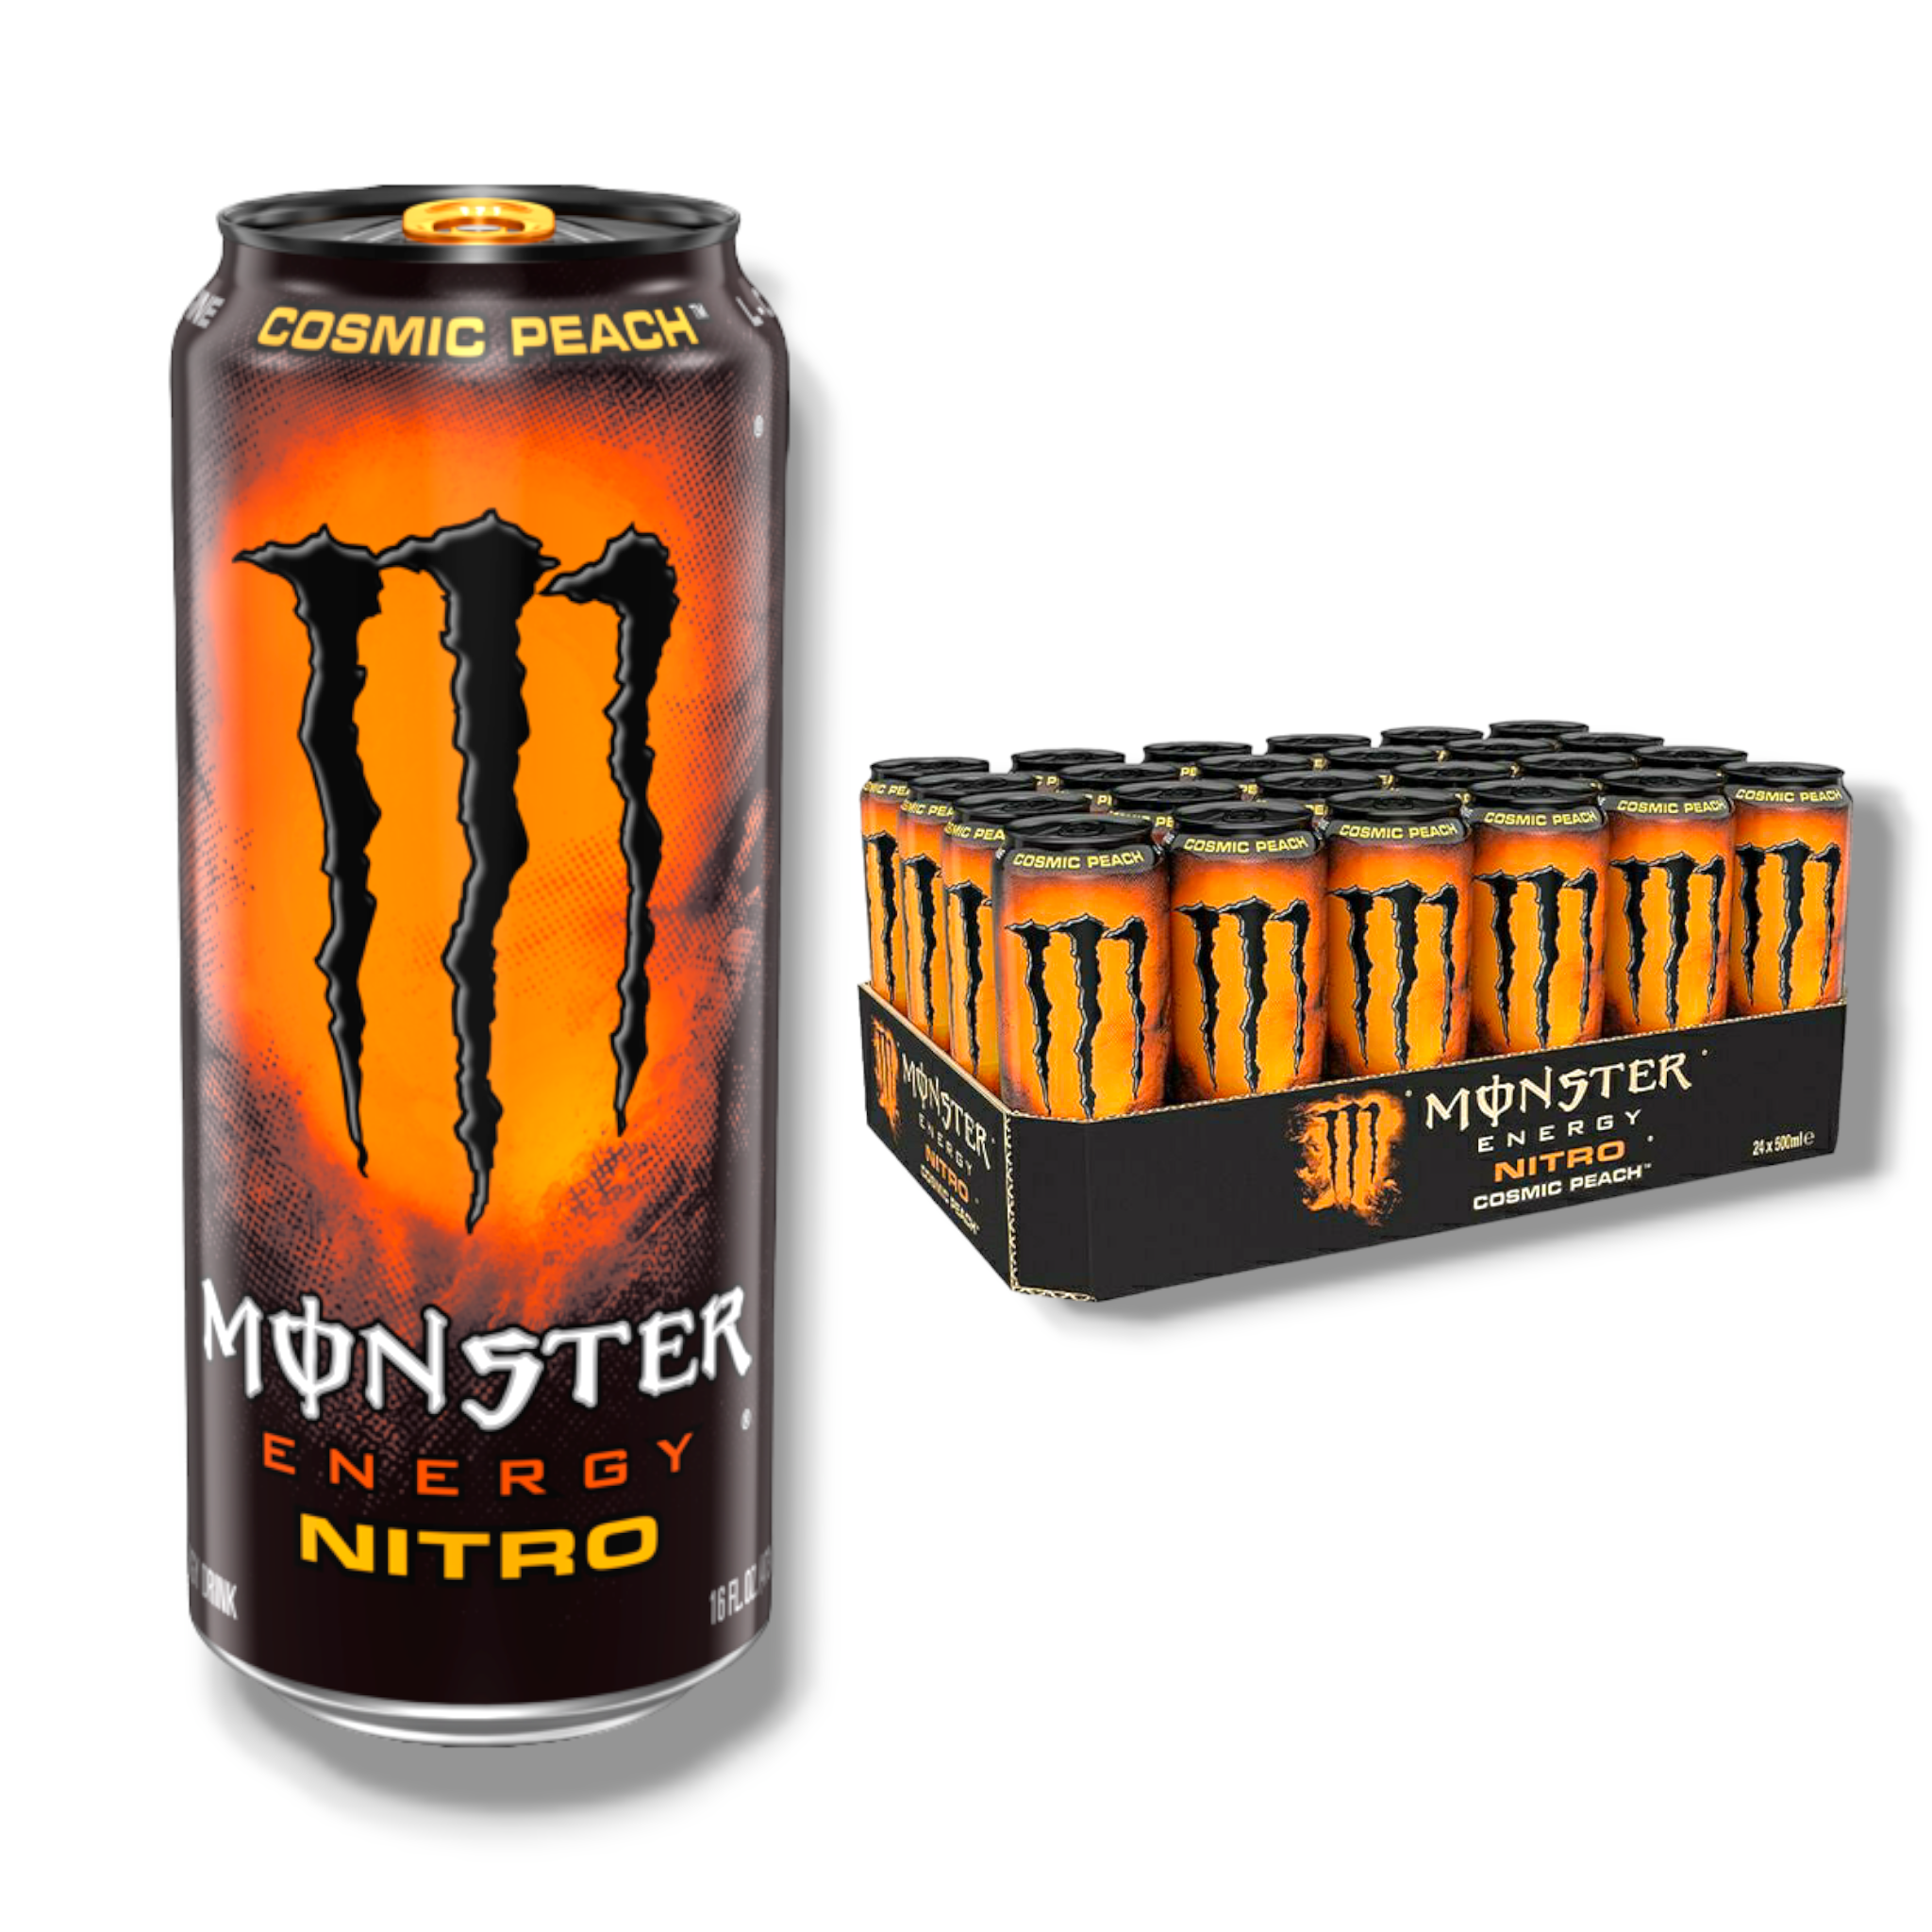 Monster Energy Nitro Cosmic Peach 0,5l